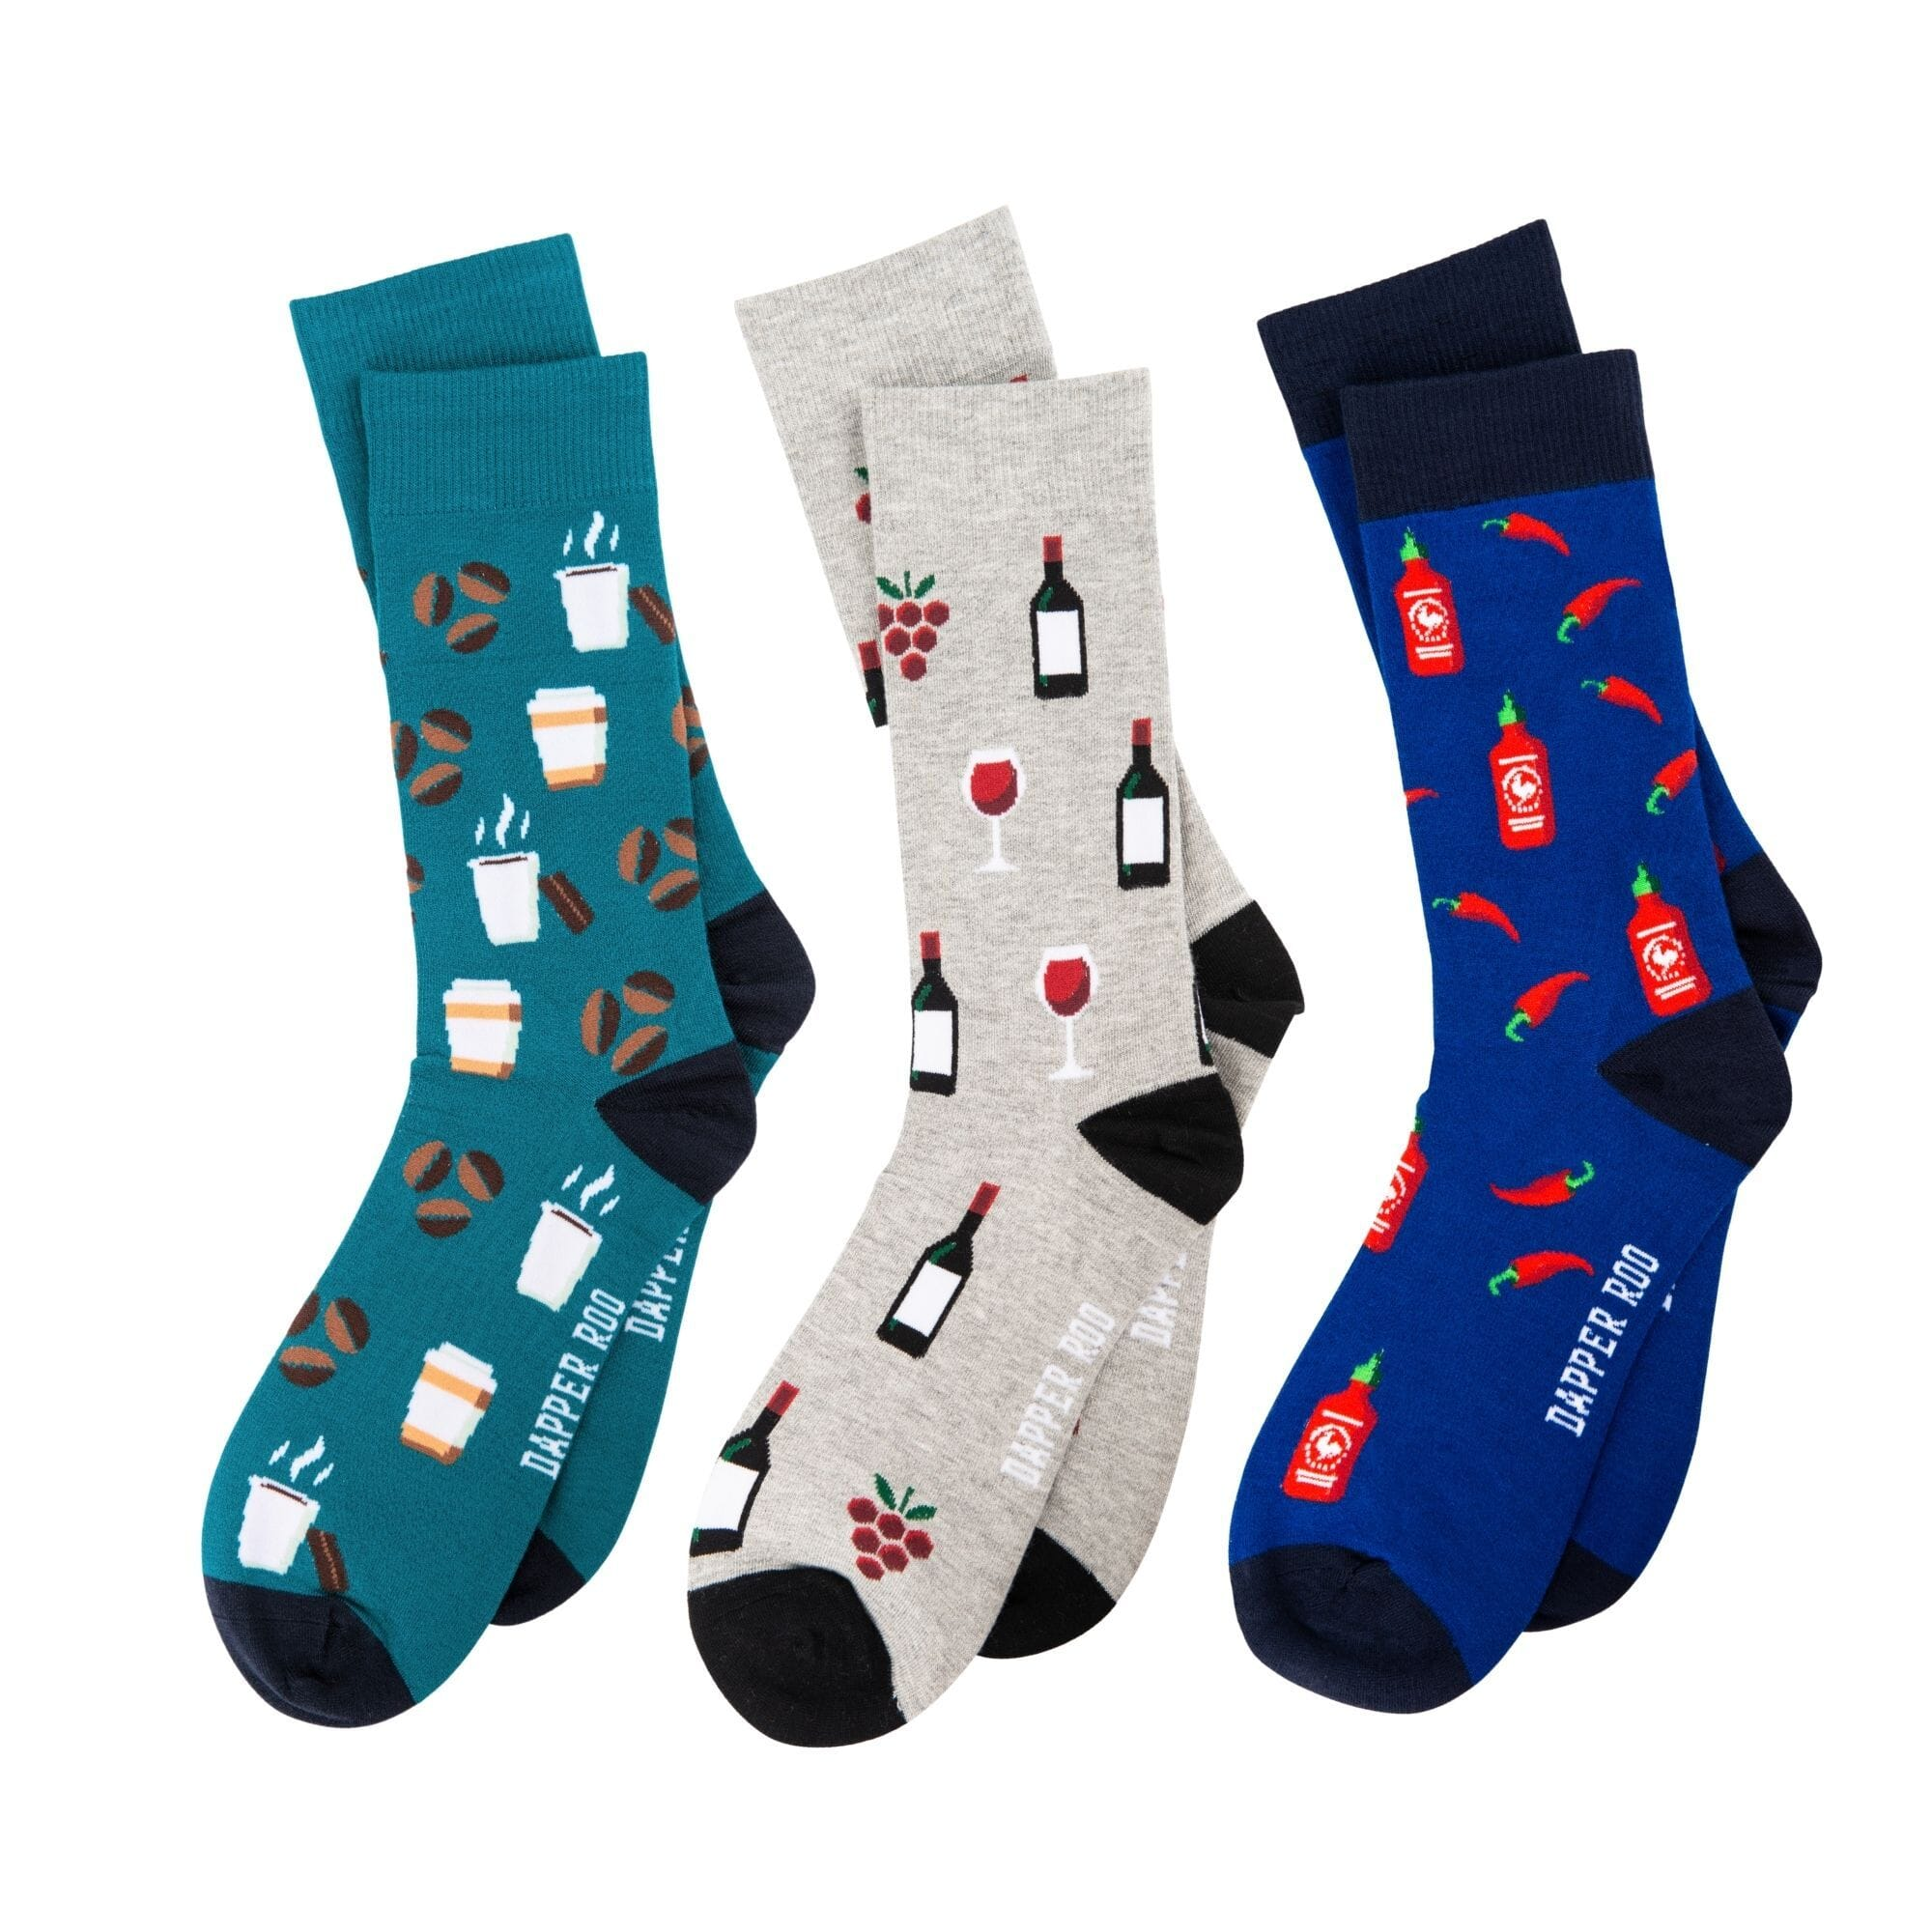 Perk up Socks Gift Set